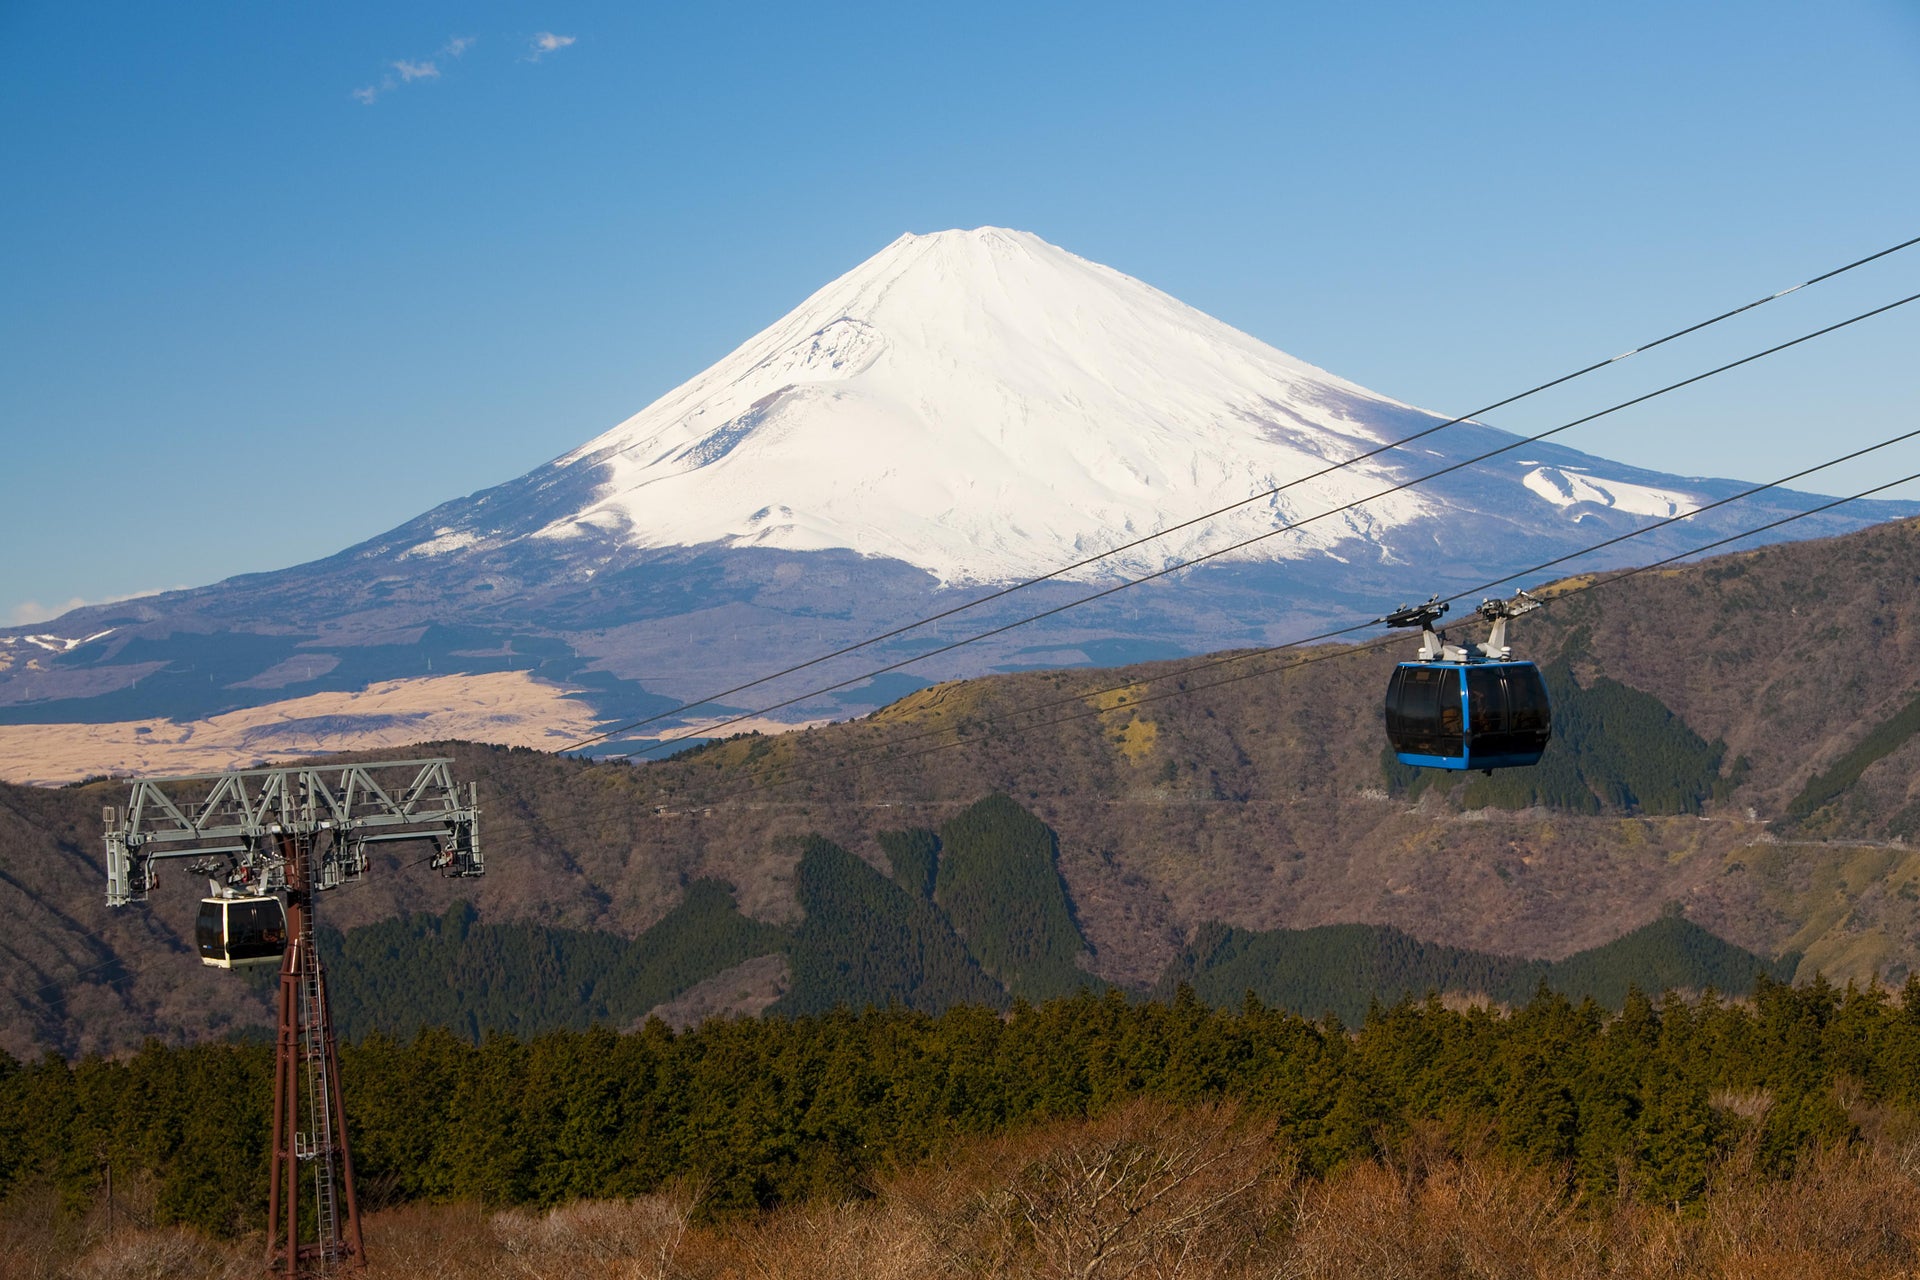 Excursão a Hakone e mirante do Monte Fuji